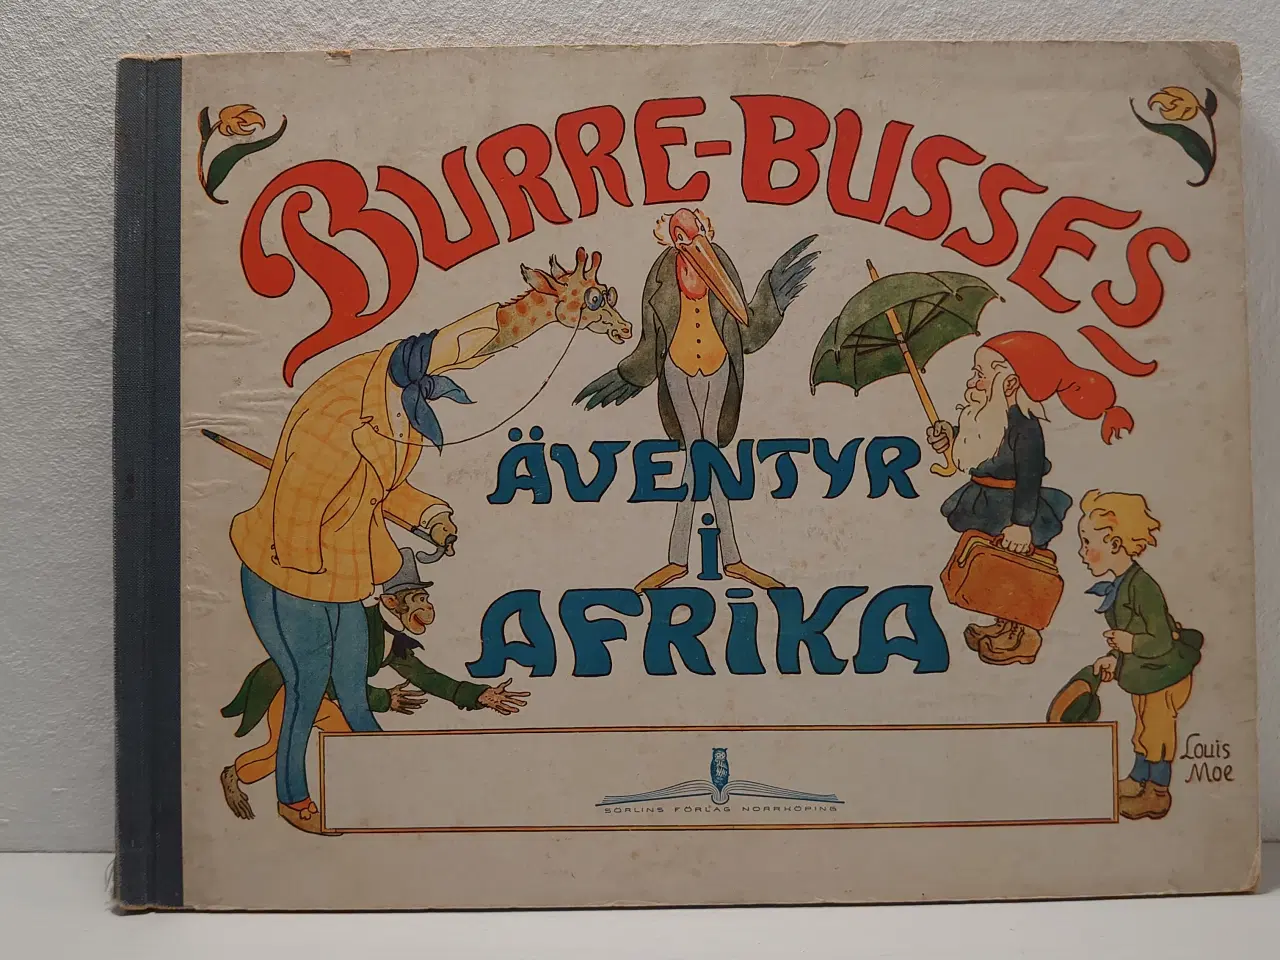 Billede 1 - Louis Moe:Burre-Busses Äventyr i Afrika. Sv. 1942